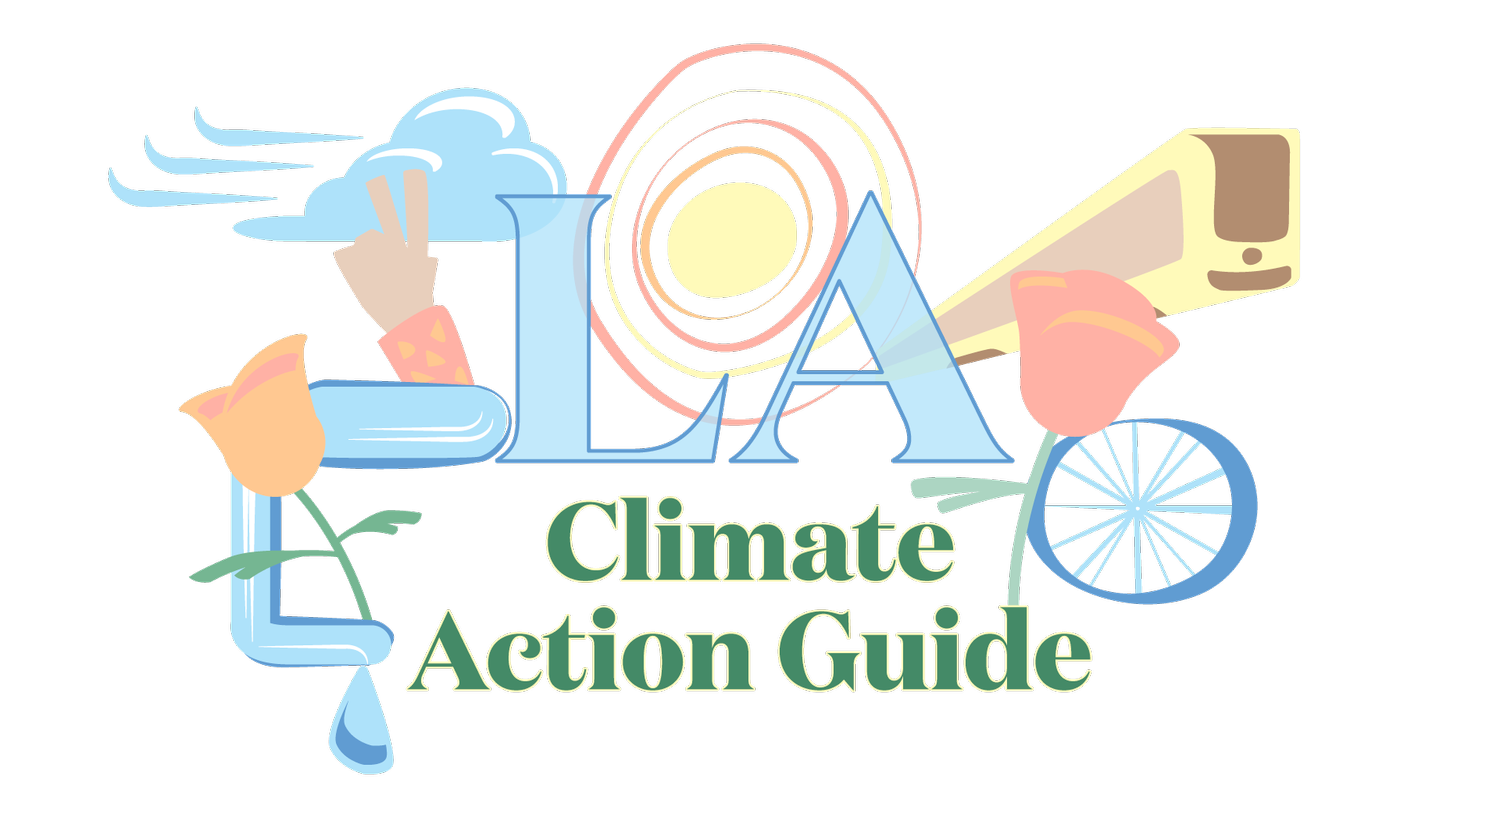 LA Climate Action Guide